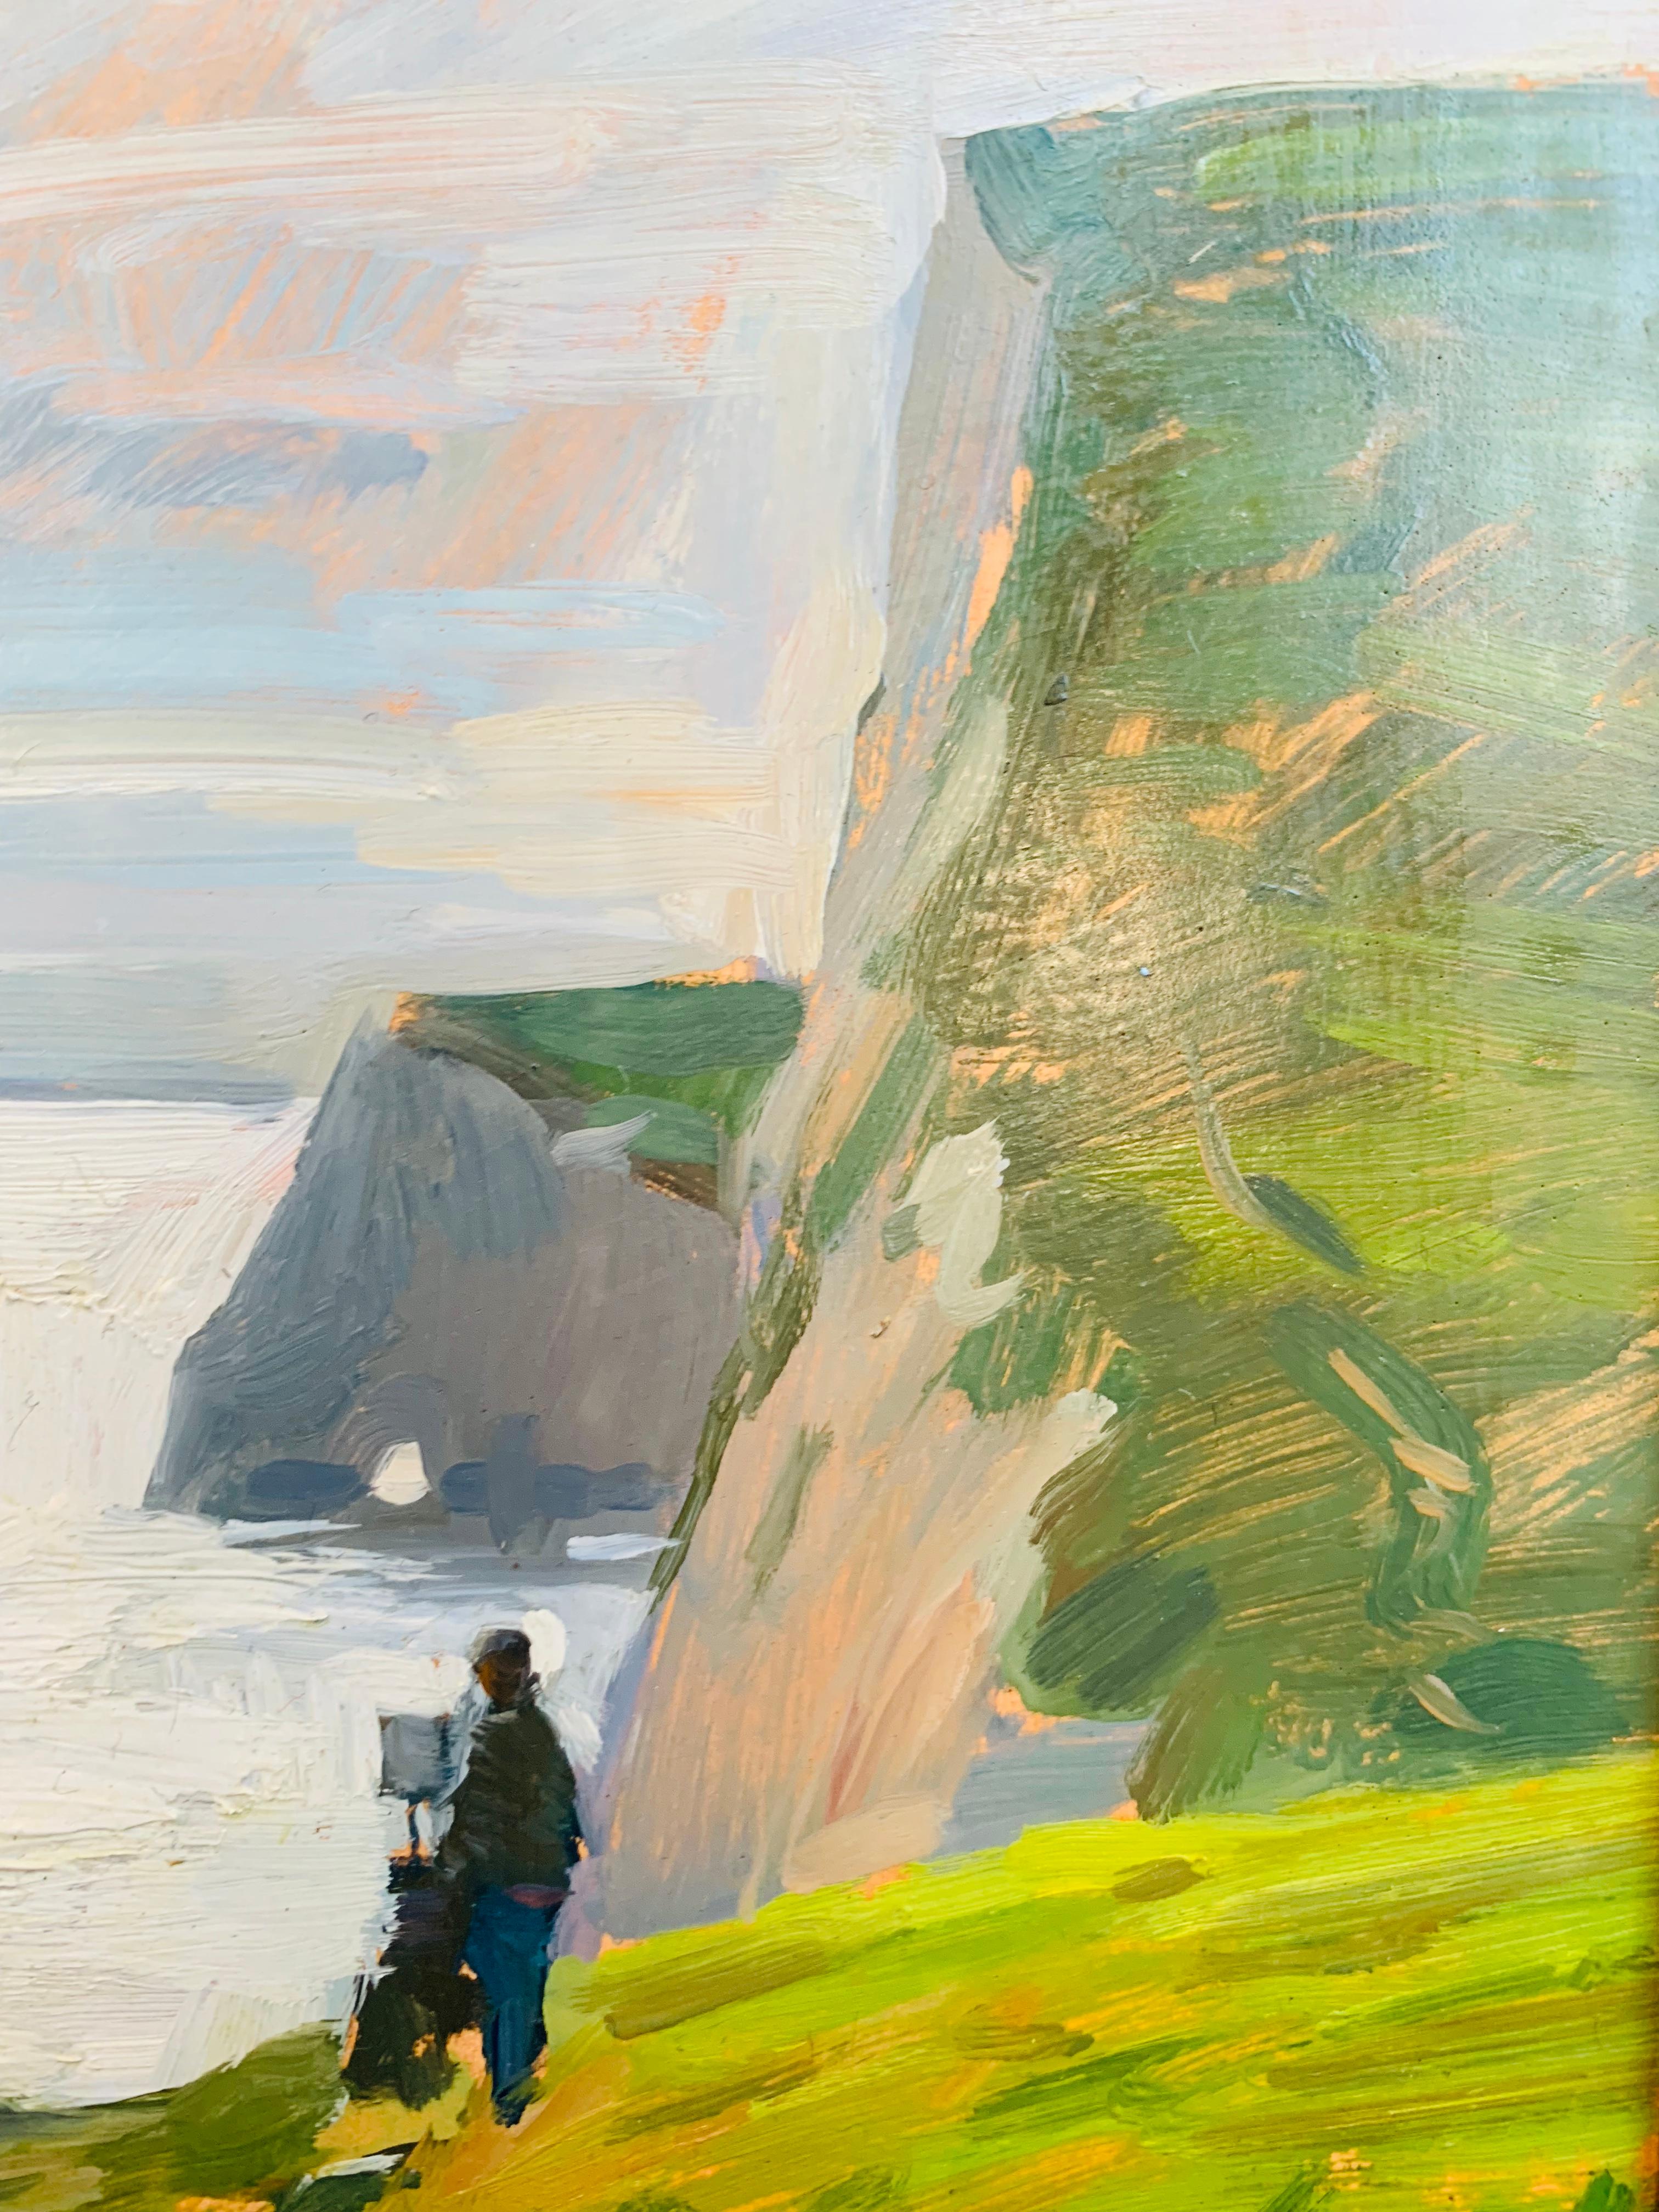 Maler an der Jurassic Coast (Grau), Landscape Painting, von Marc Dalessio